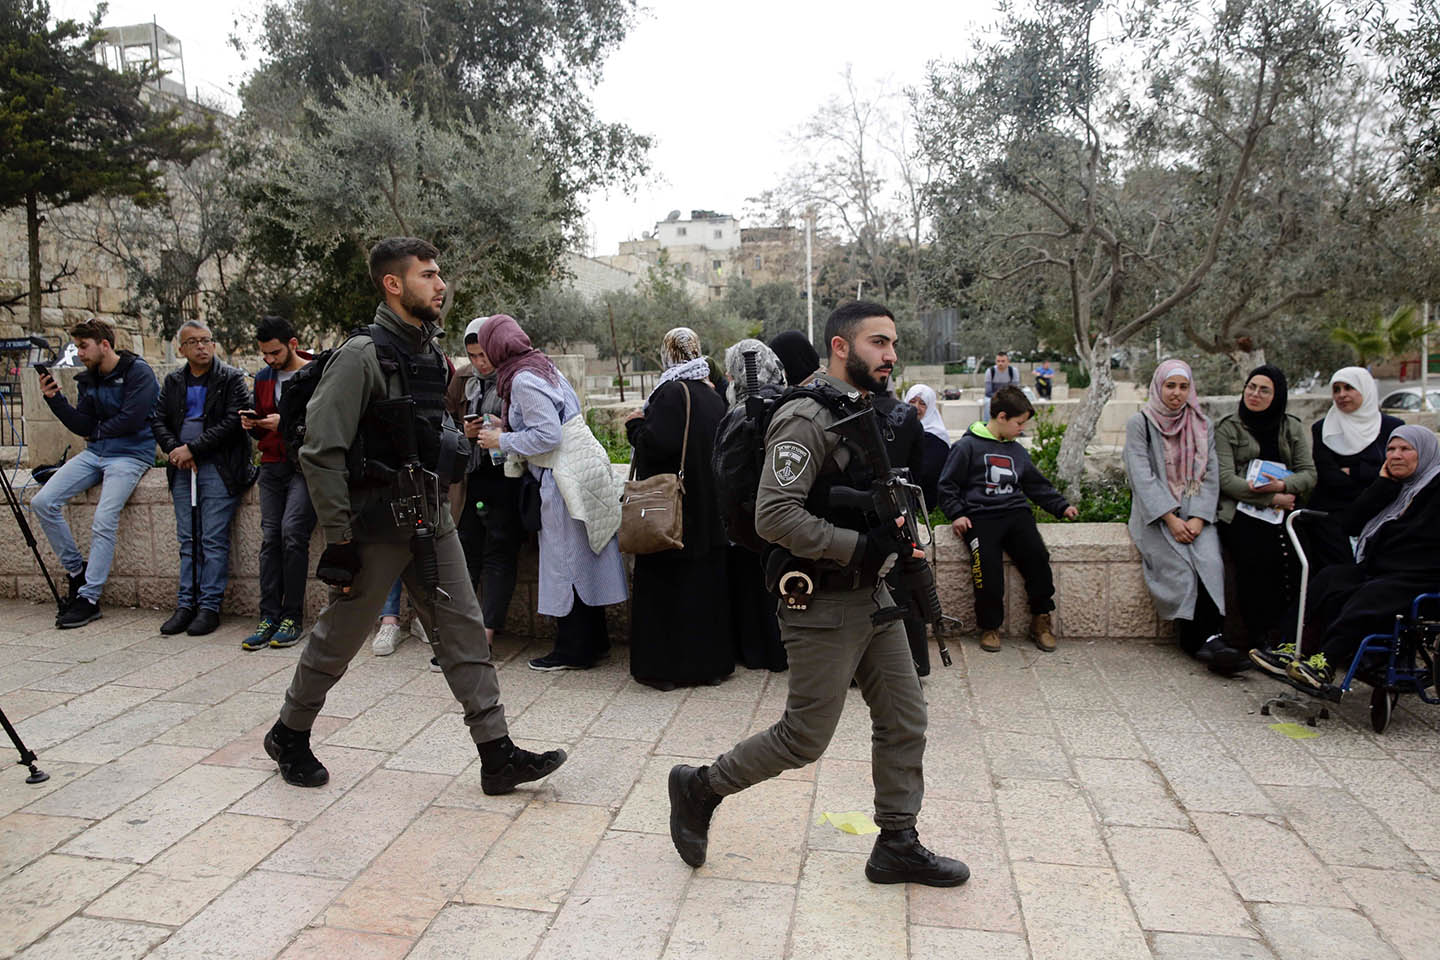 وزارة شؤون القدس تحذر من محاولات تغيير الوضع التاريخي القائم بالأقصى